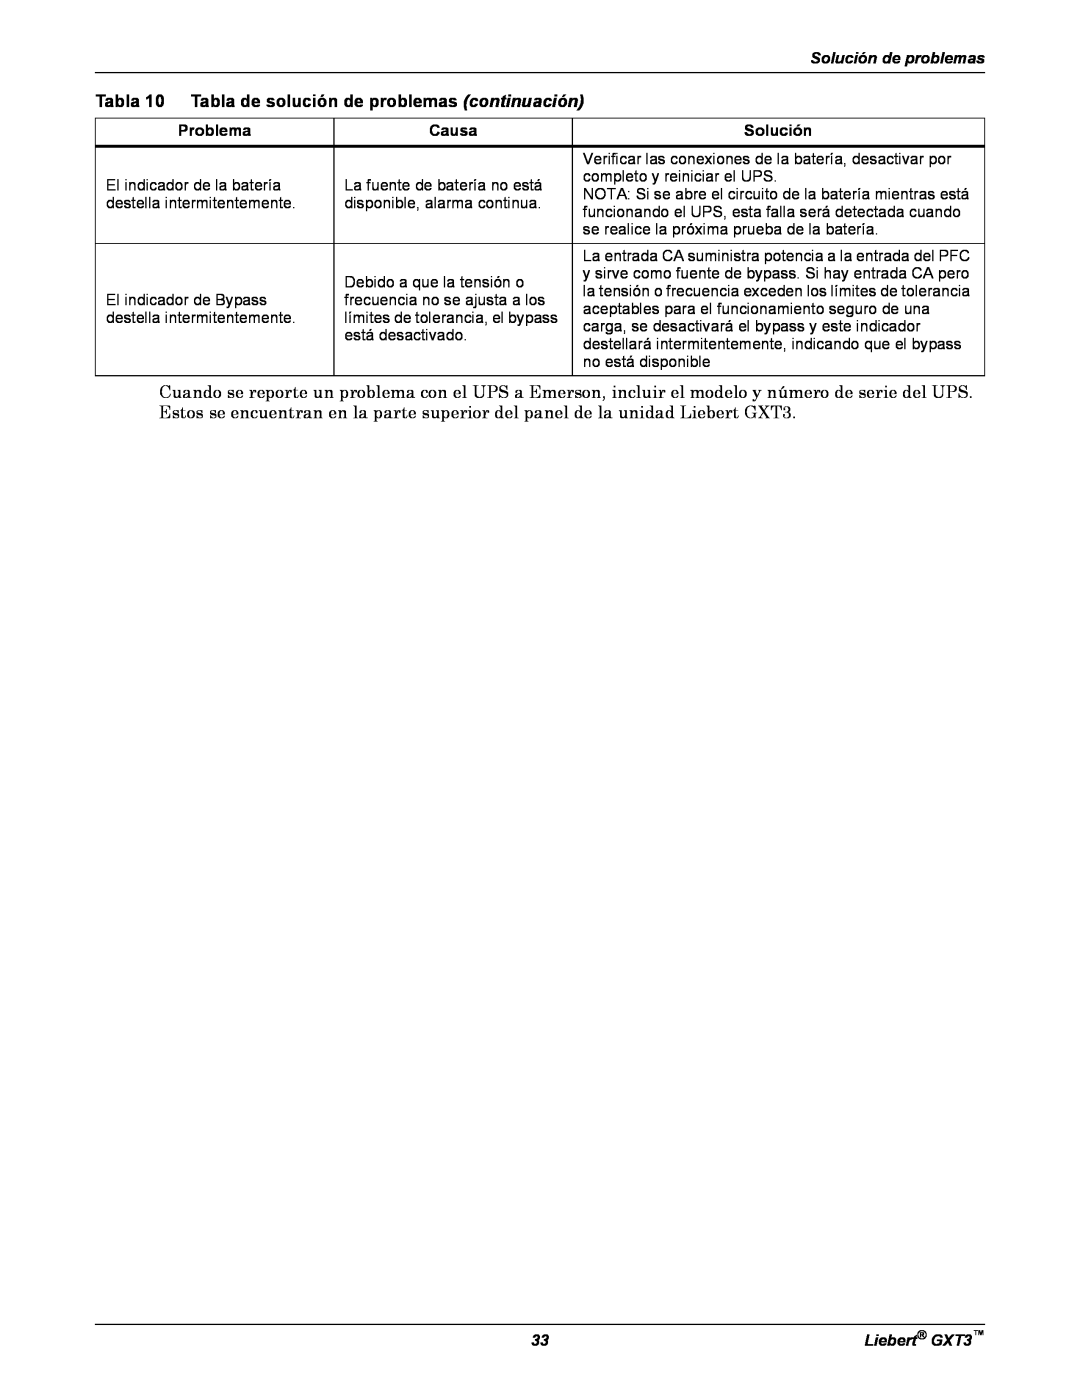 Emerson manual Tabla 10 Tabla de solución de problemas continuación, Solución de problemas, Liebert GXT3 